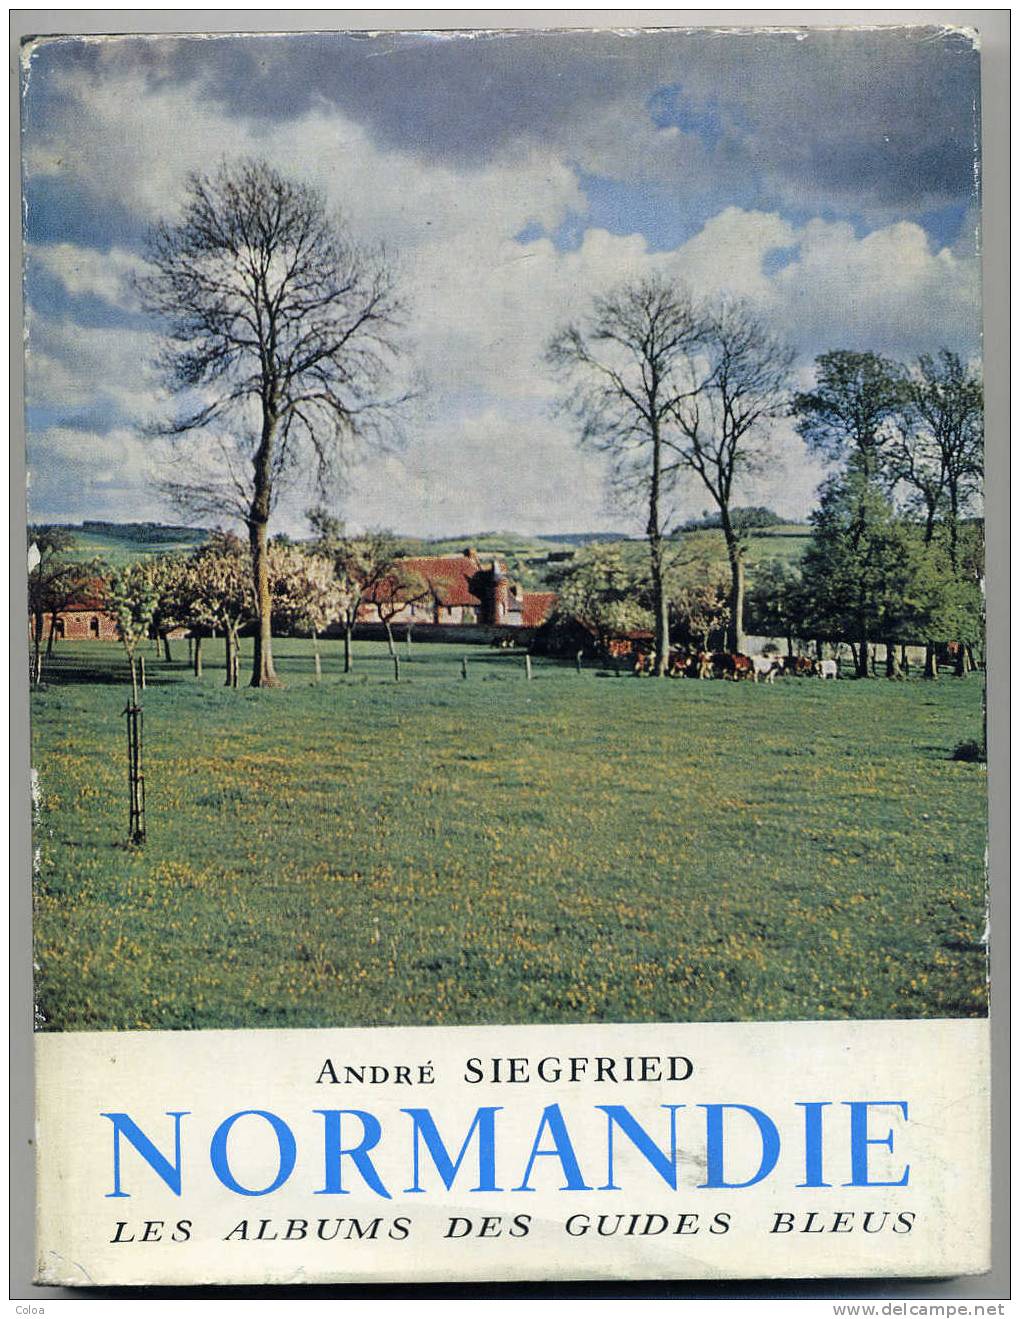 André SIEGFRIED NORMANDIE 1957 - Normandie